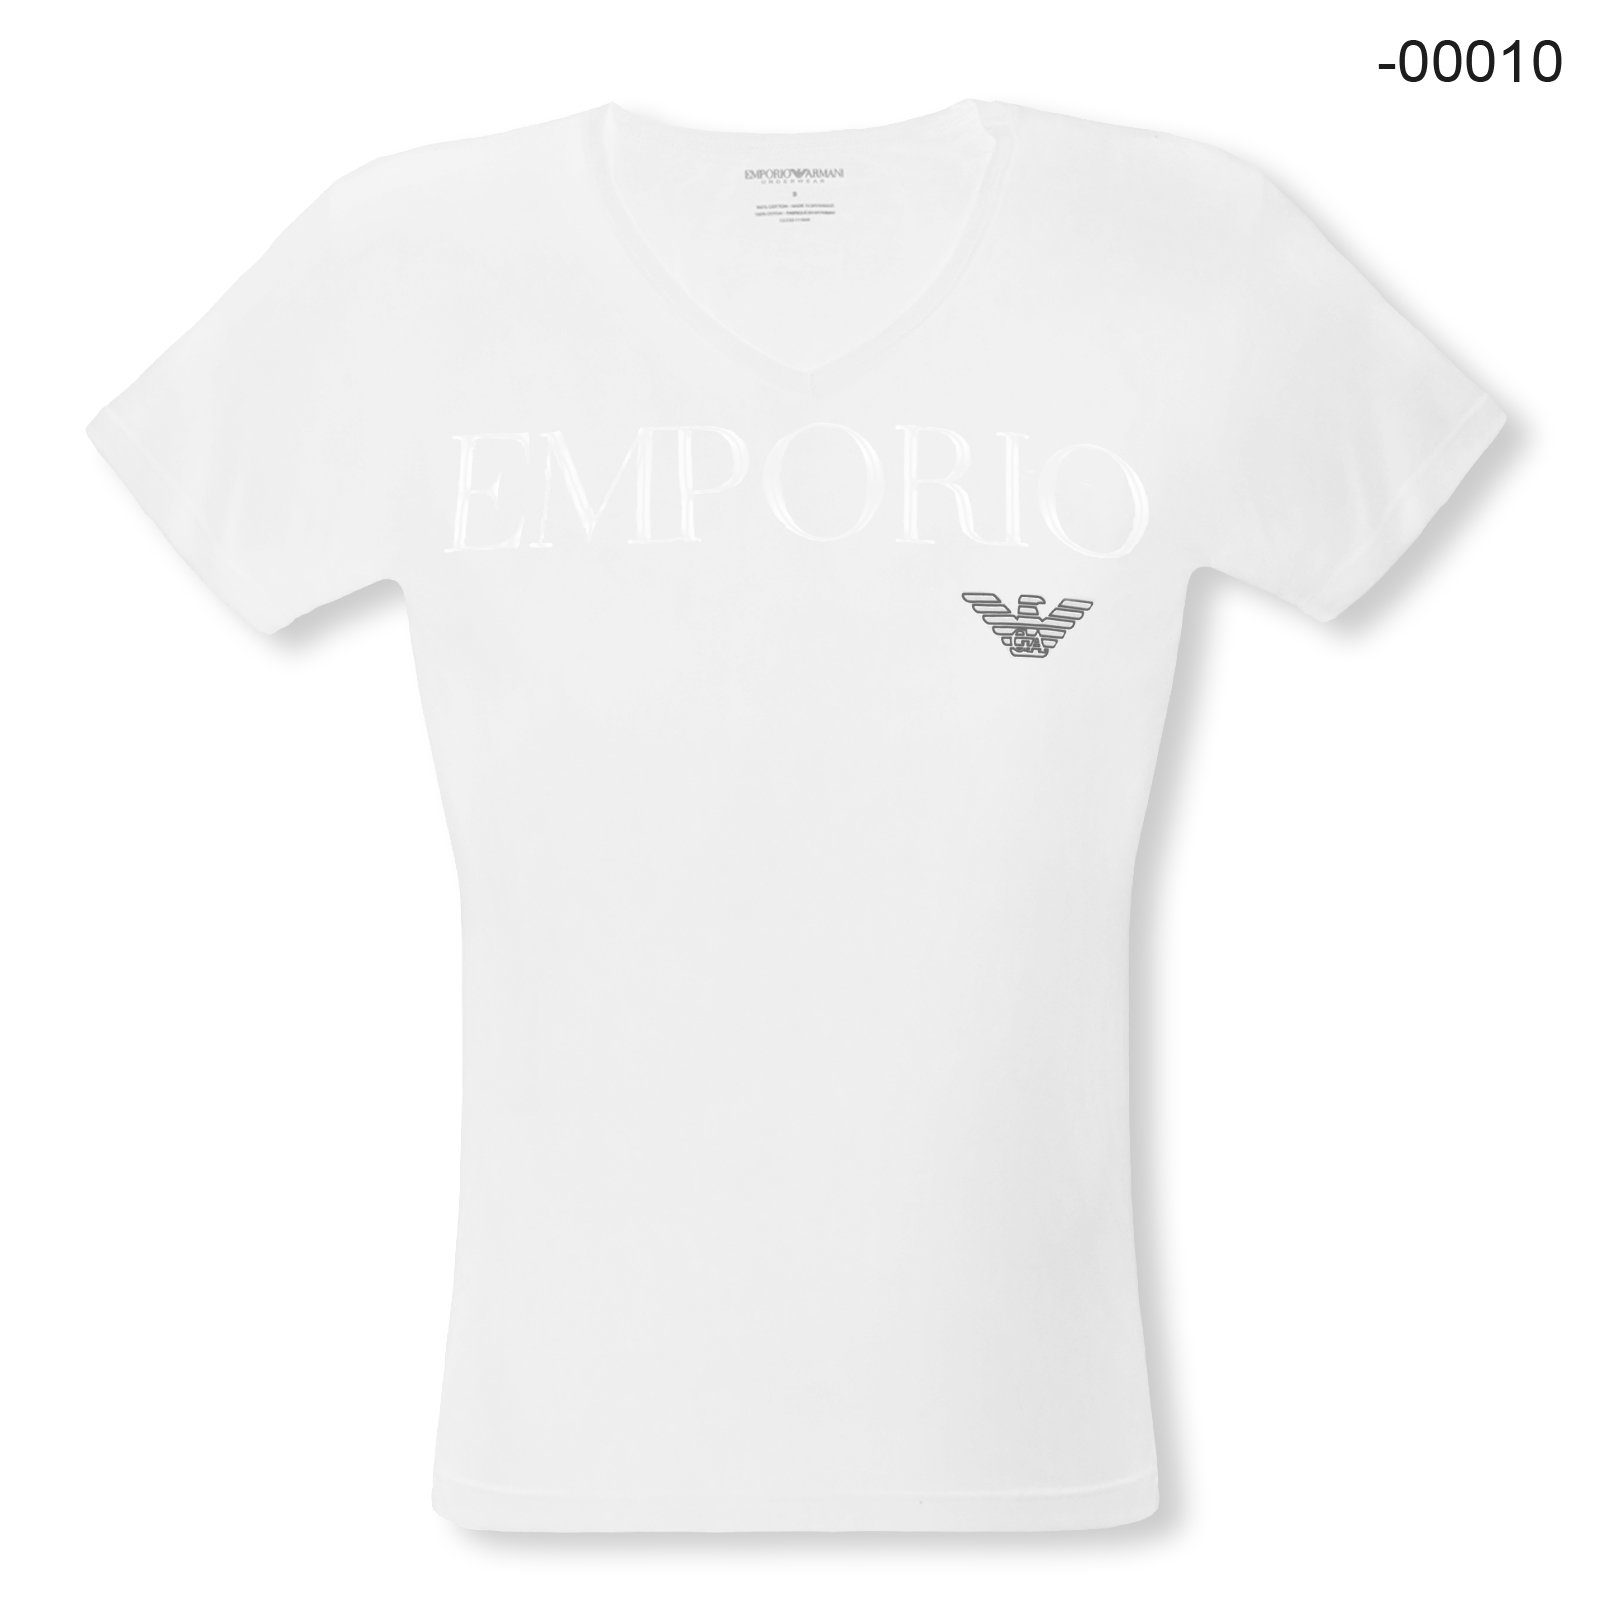 Emporio Armani T-Shirt V-Neck Stretch Cotton mit Markenschriftzug und Eagle-Logo auf der Brust 00010 white